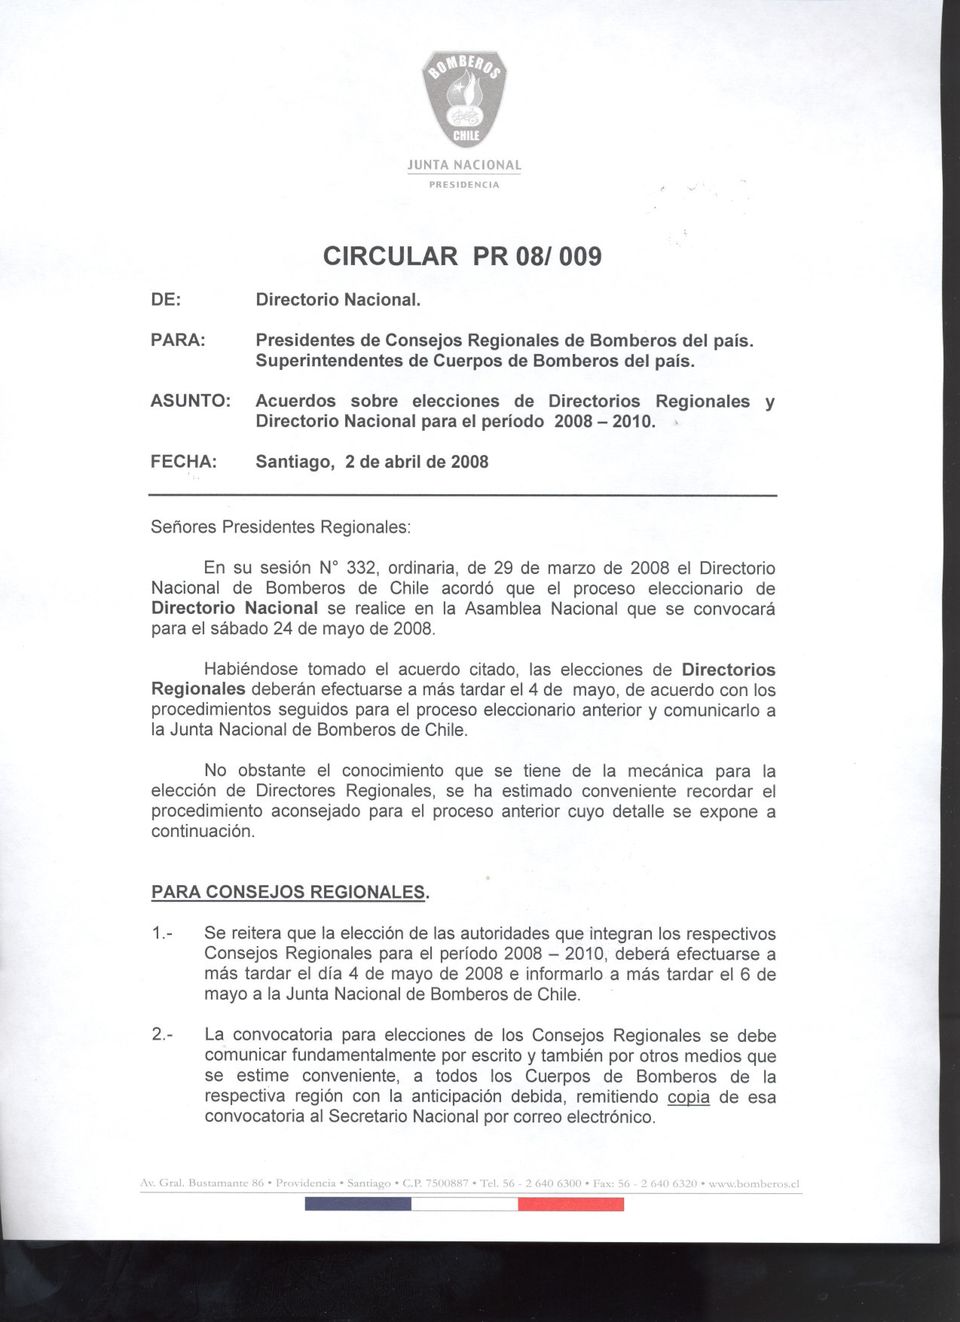 FECHA: Santiago, 2 de abril de 2008 Señores Presidentes Regionales: En su sesión N 332, ordinaria, de 29 de marzo de 2008 el Directorio Nacional de Bomberos de Chile acordó que el proceso